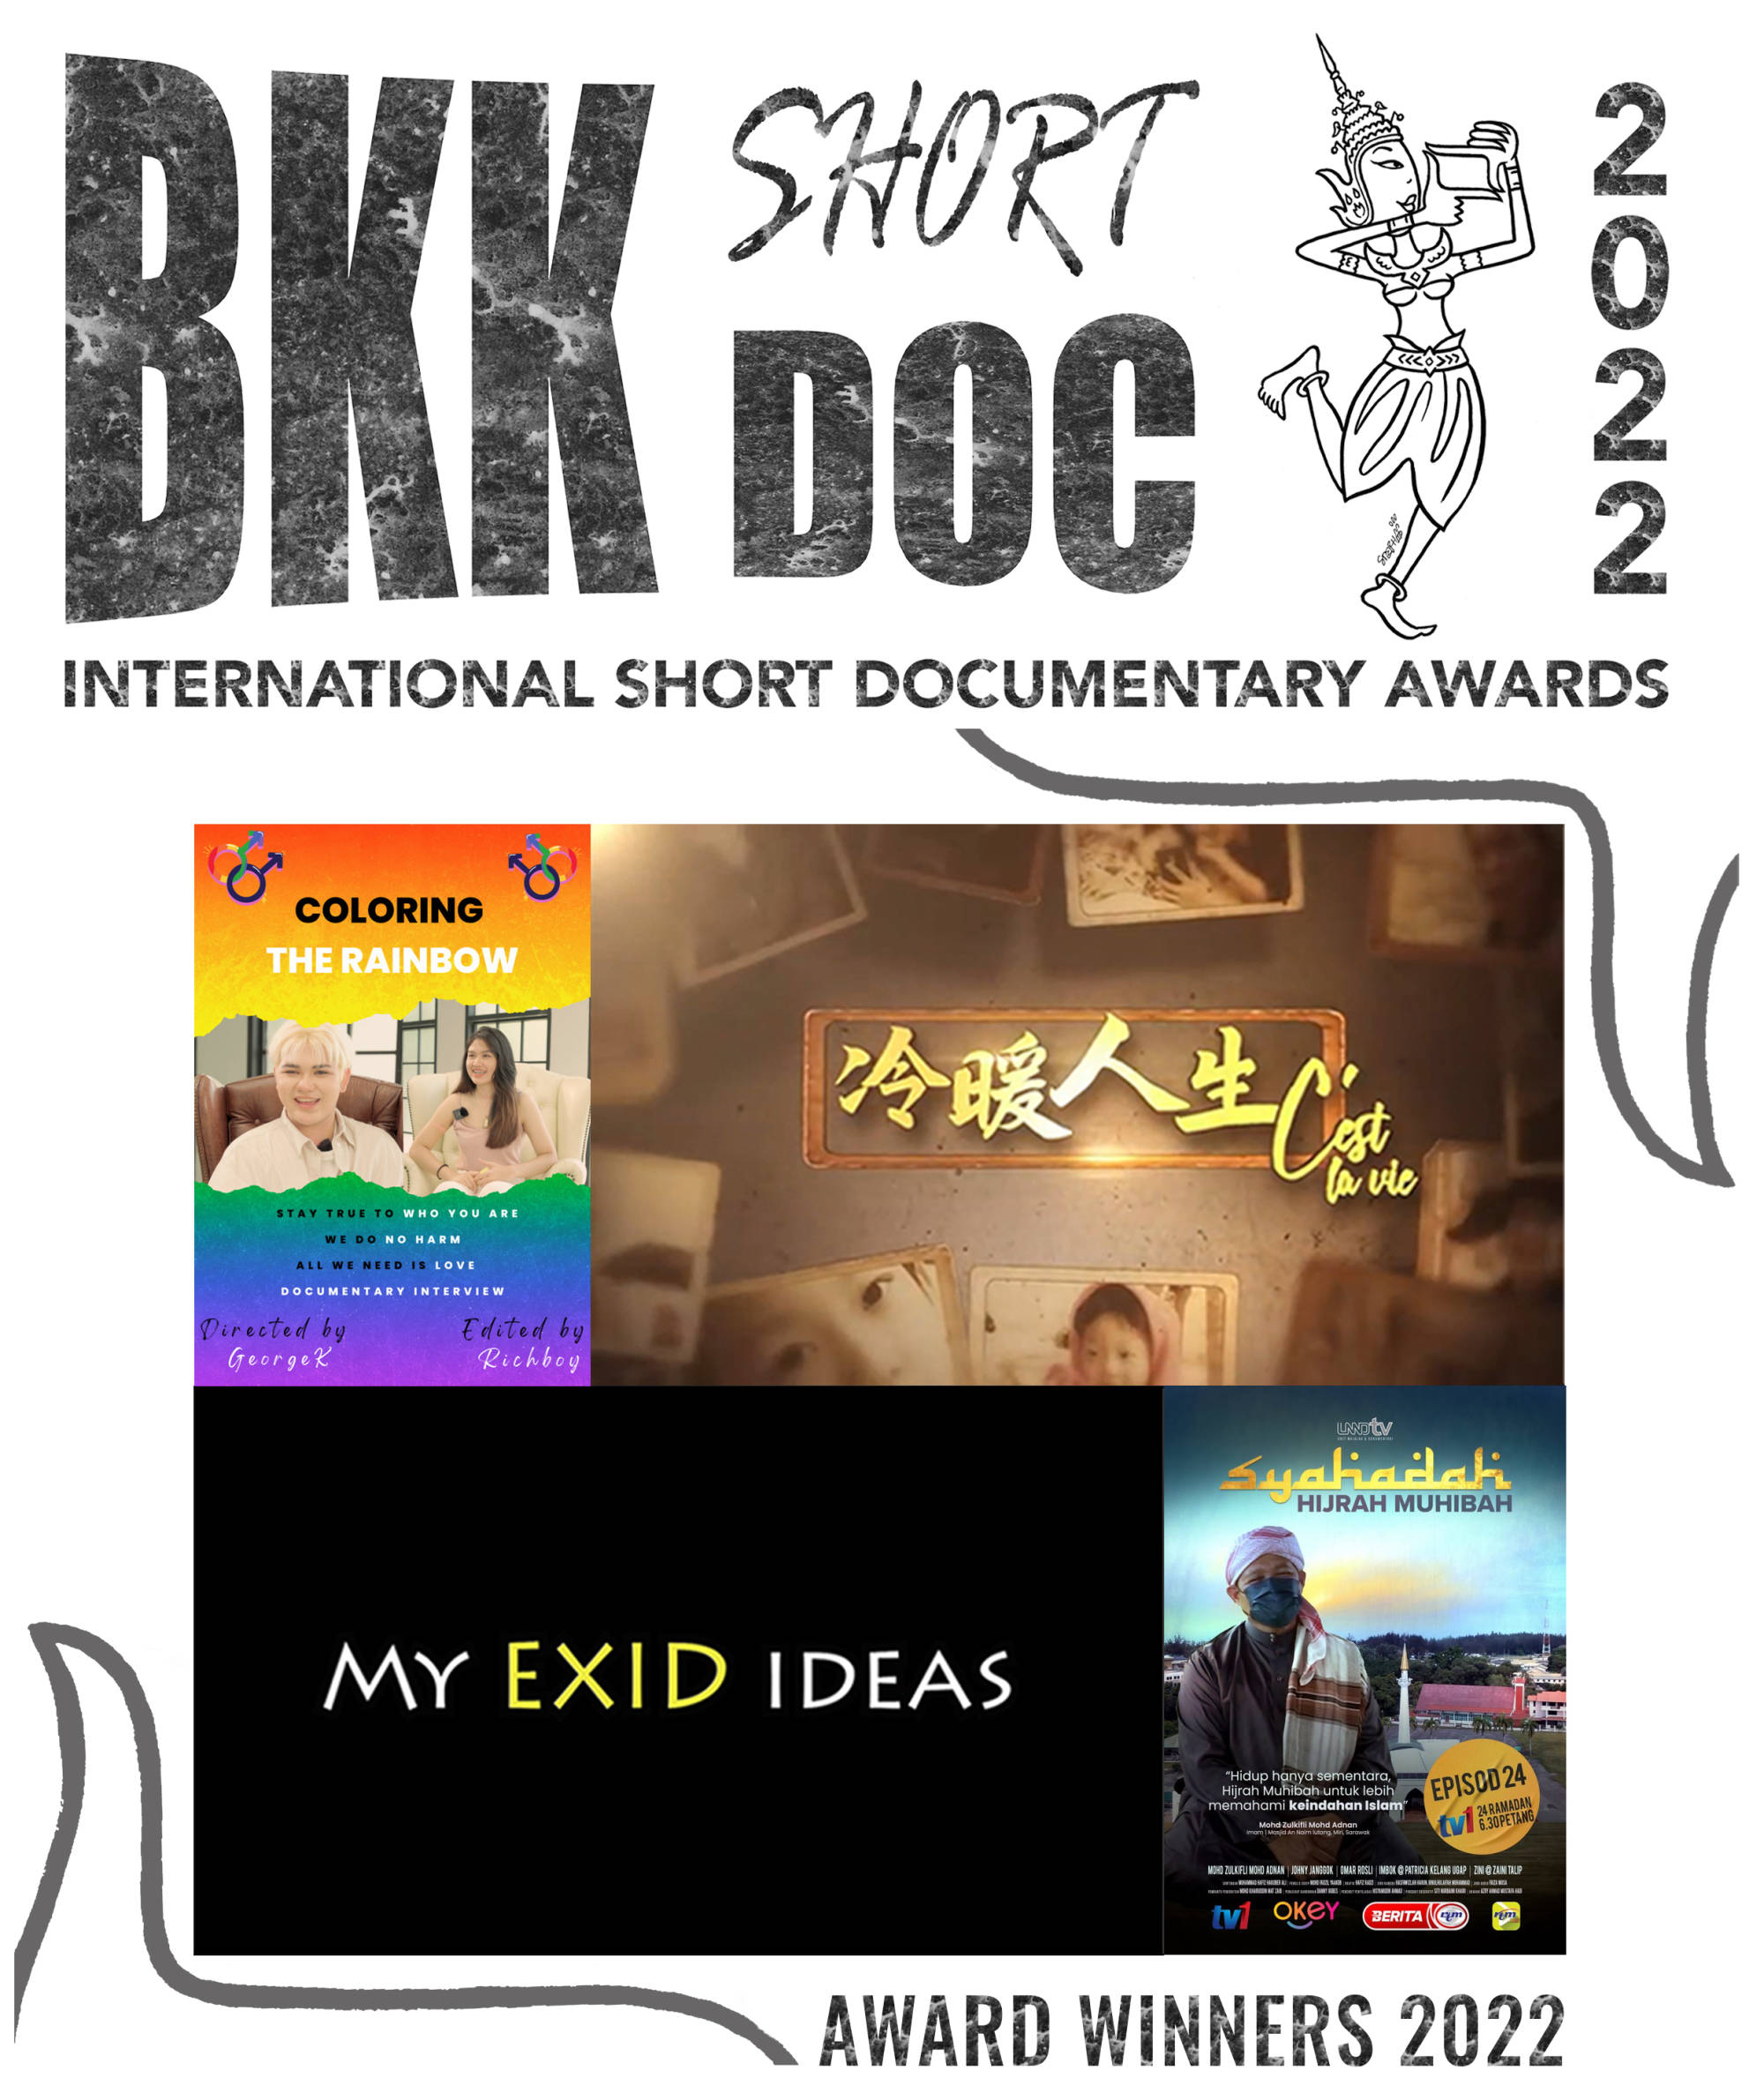 BKK short DOC 2022 Award Winners 2022